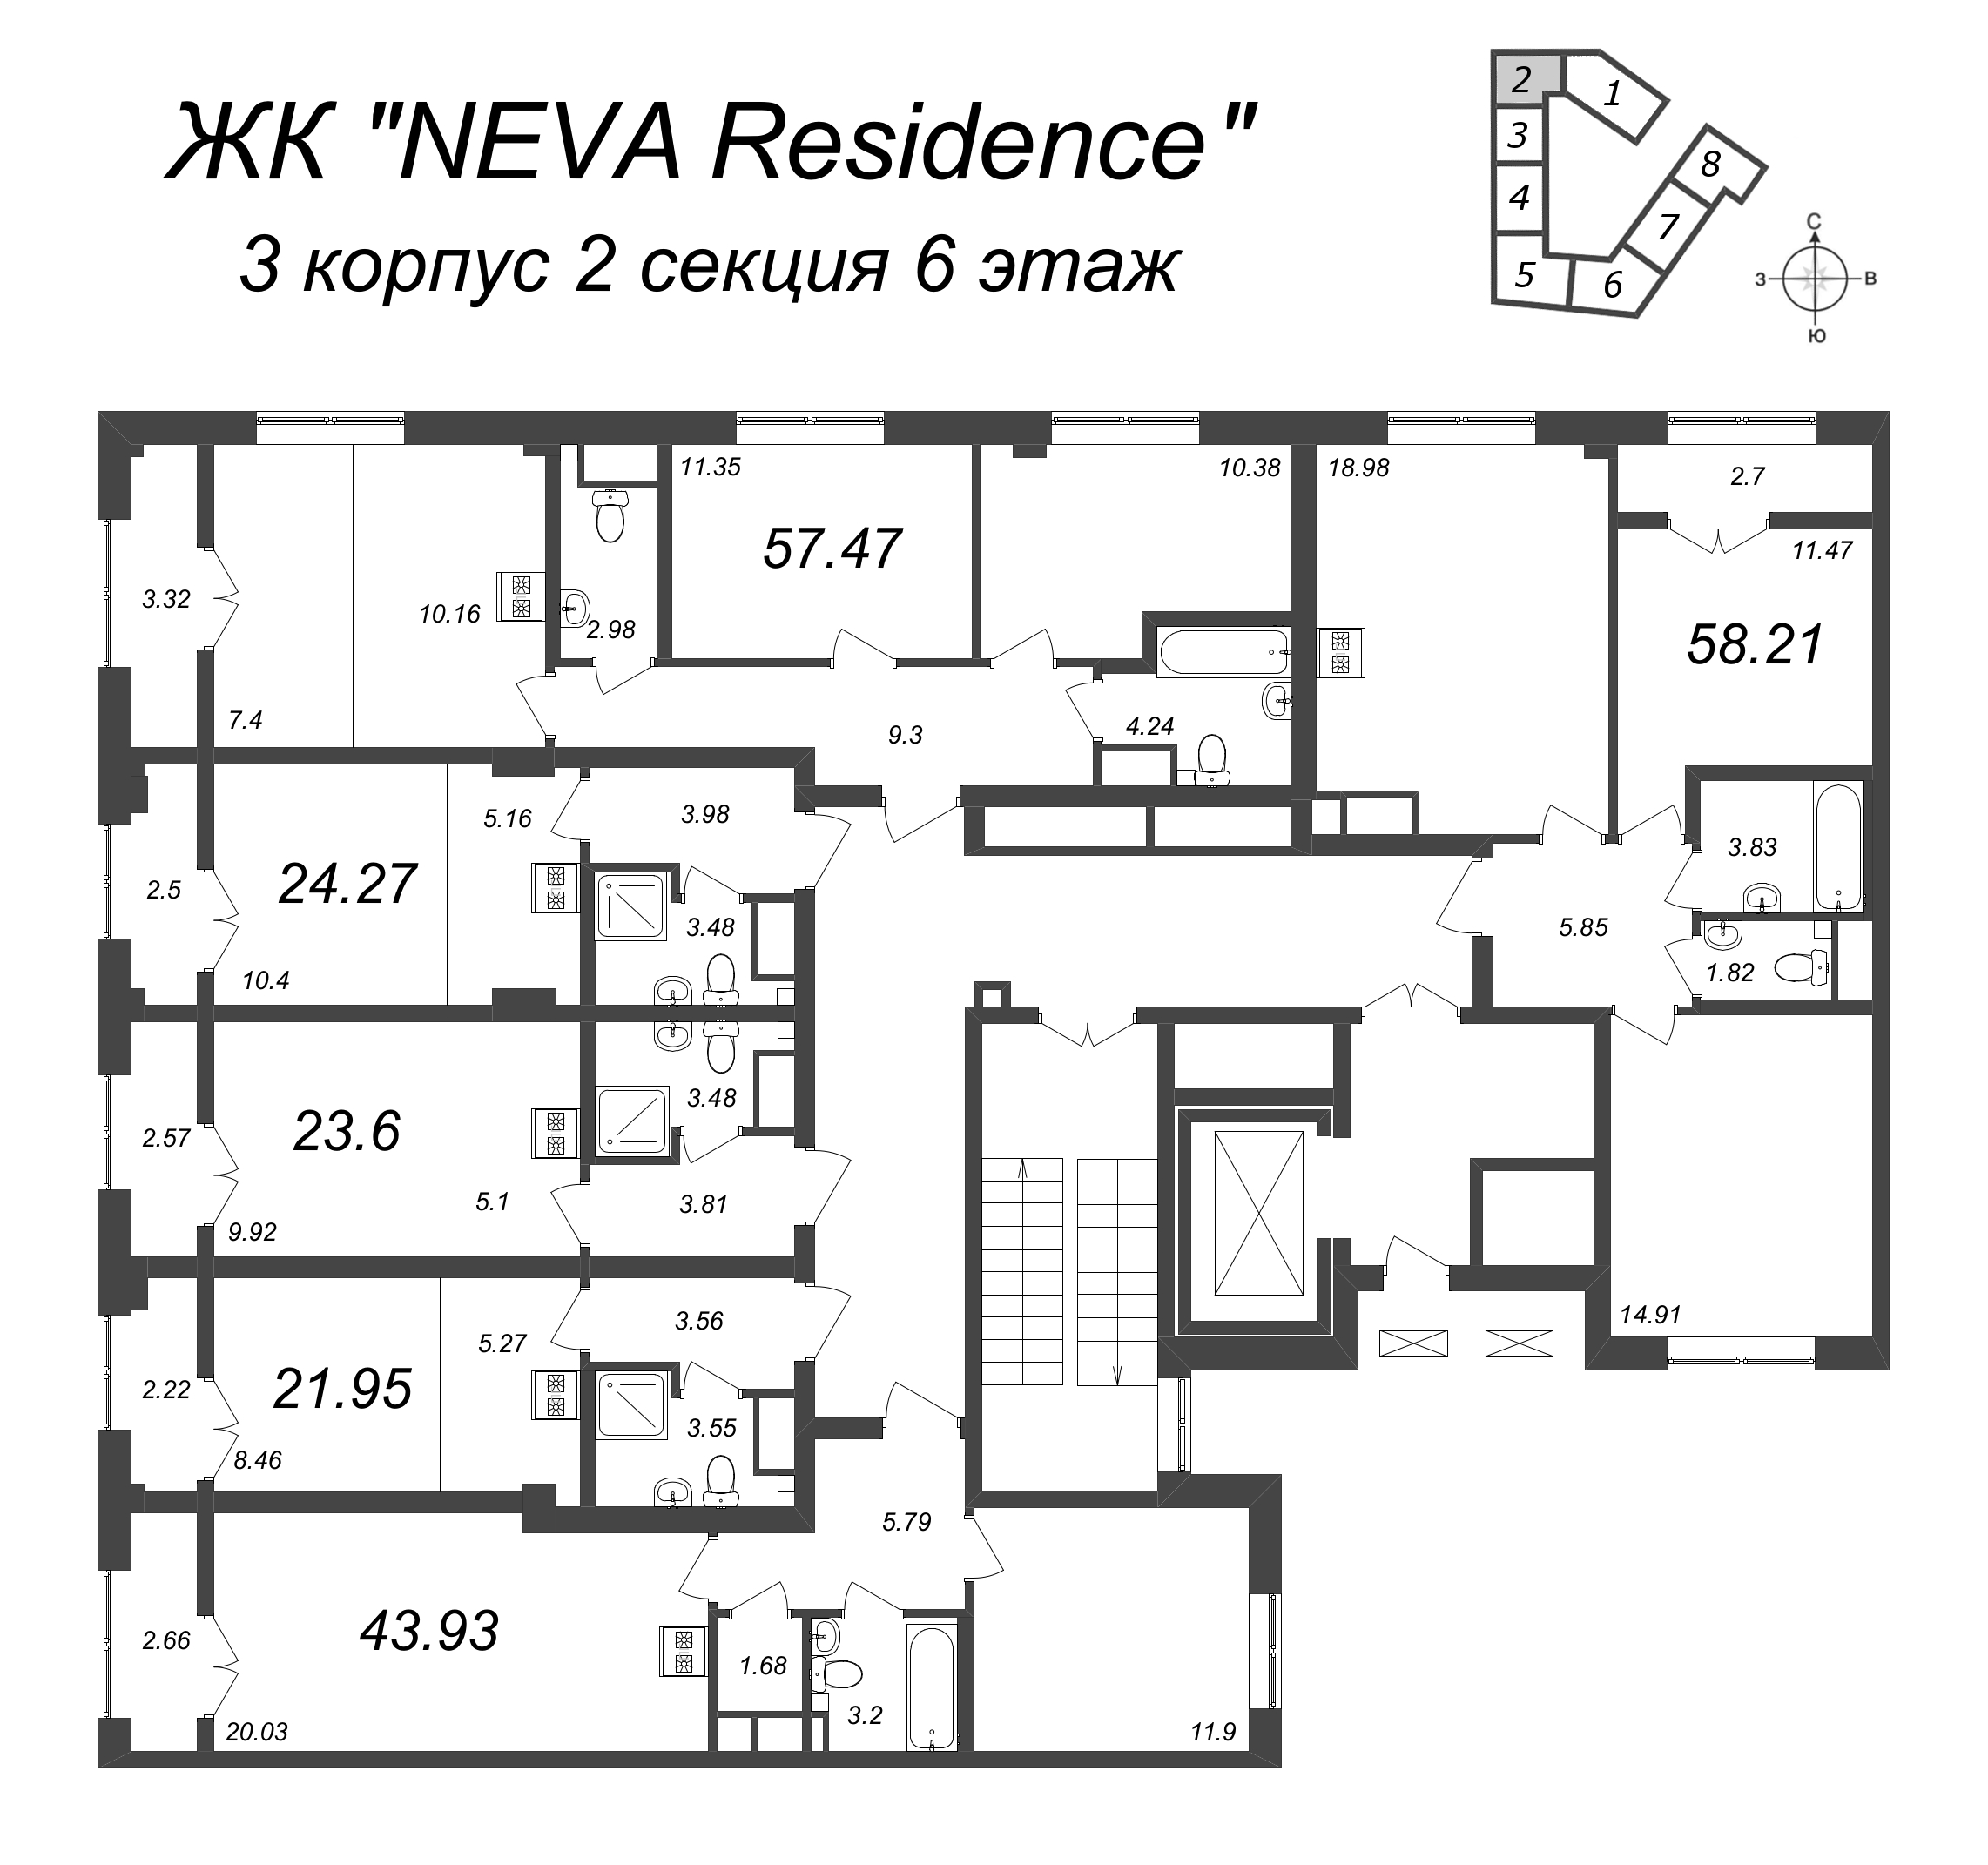 3-комнатная (Евро) квартира, 57.47 м² в ЖК "Neva Residence" - планировка этажа